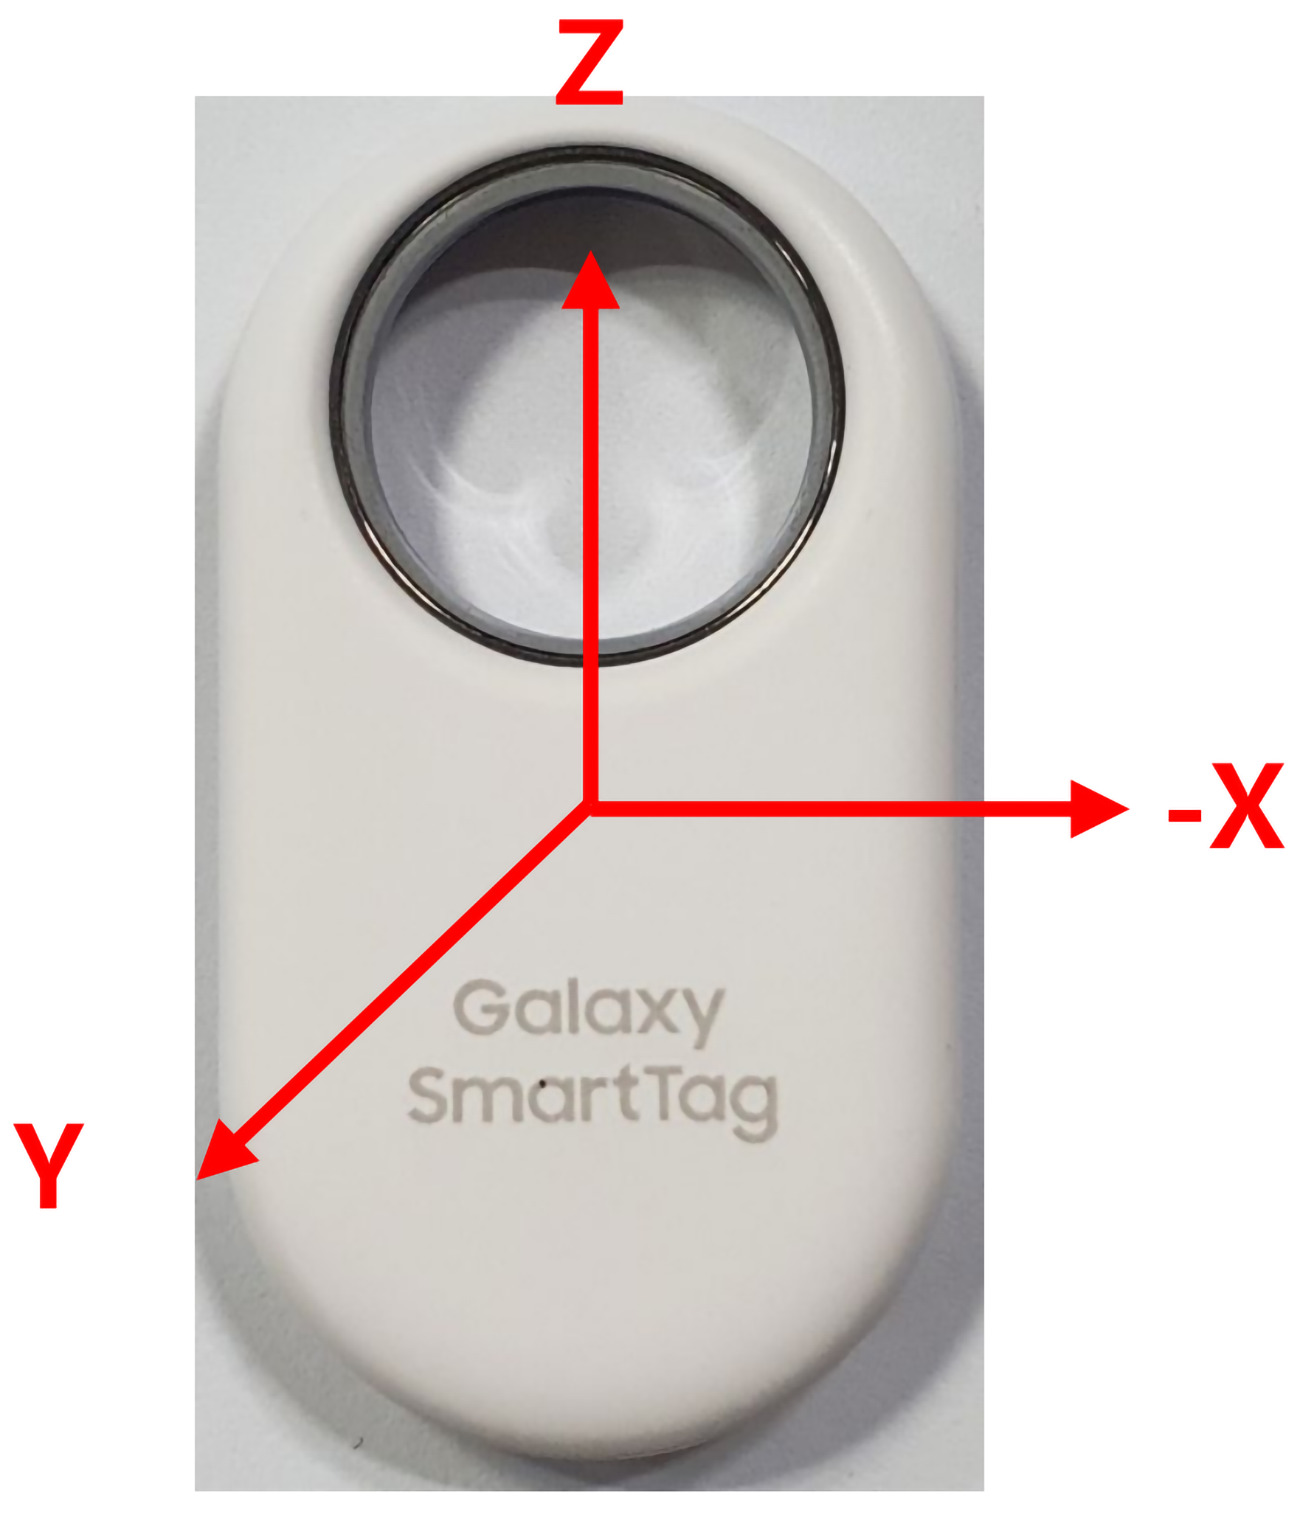 Le Samsung SmartTag 2 pourrait être aussi « fermé » que l'AirTag d'Apple